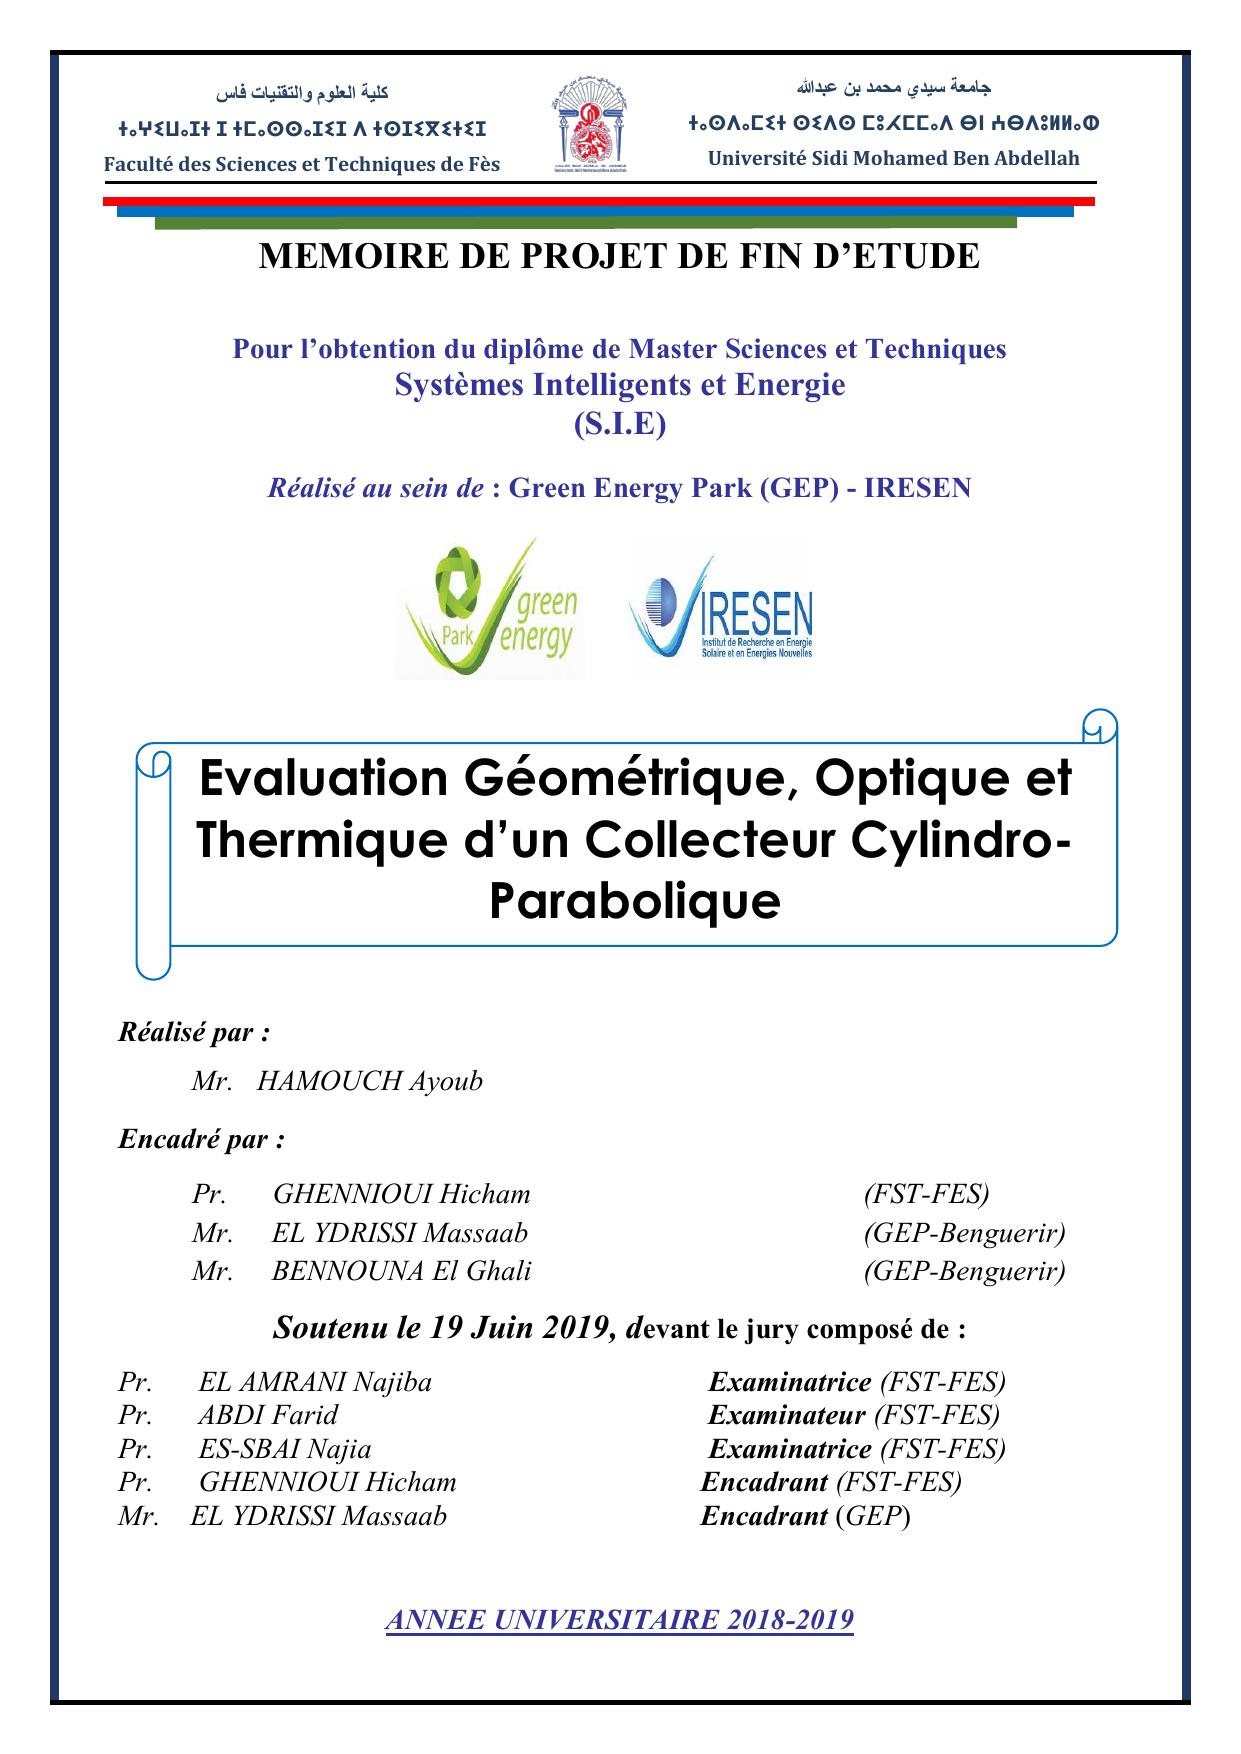 Evaluation Géométrique , Optique et thermique d'un Collecteur Cylindro-Parabolique